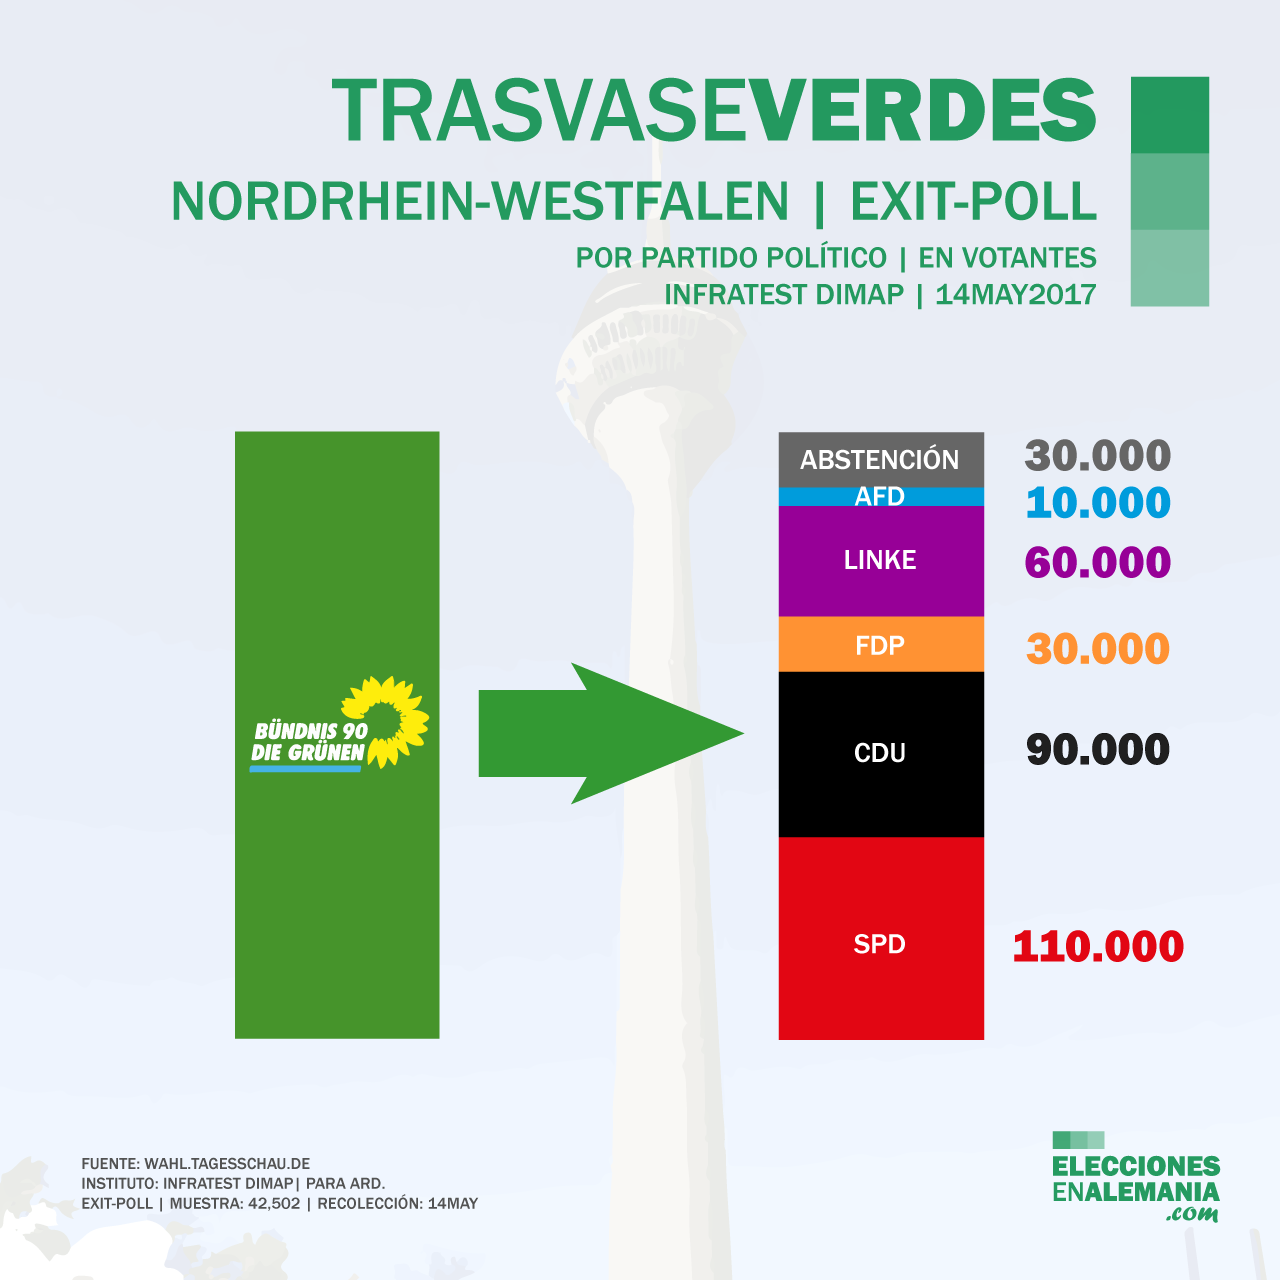 Elecciones-NRW-Alemania-Encuestas-2017-Trasvase-Verdes.png